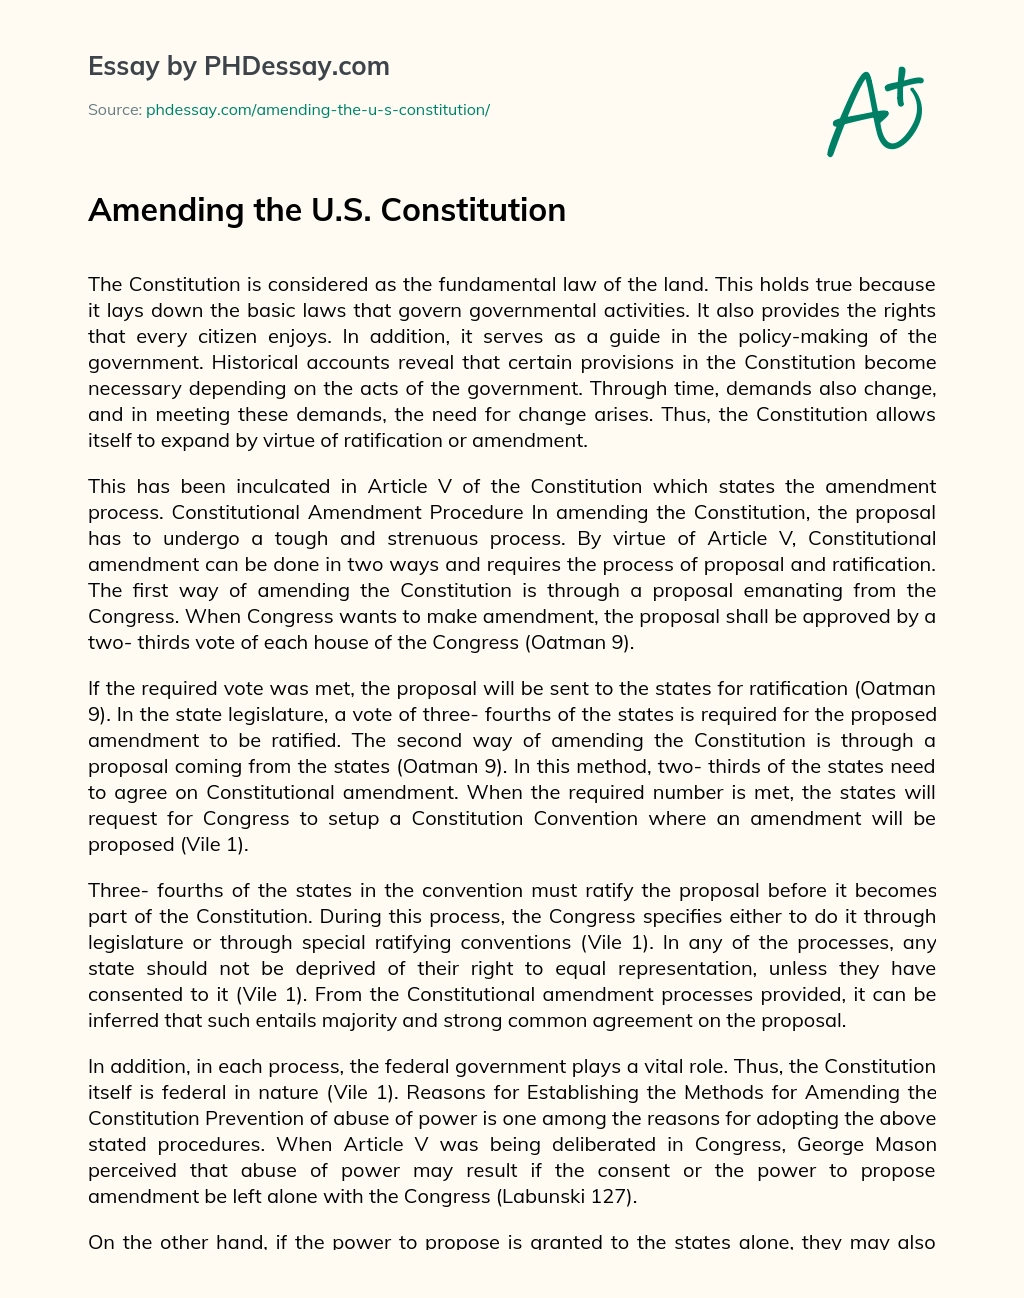 Amending the U.S. Constitution essay